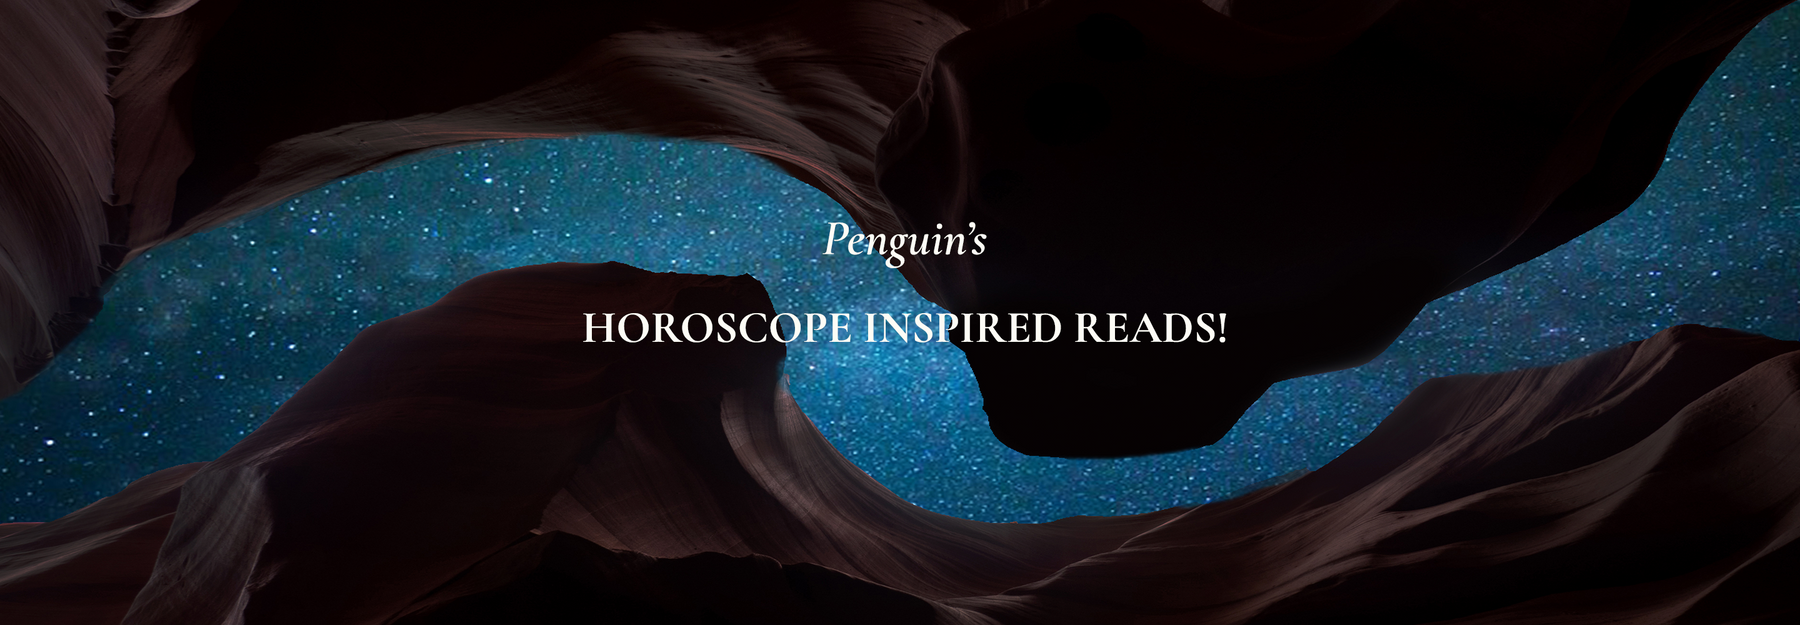 Penguin's Horoscope-inspired Reads!